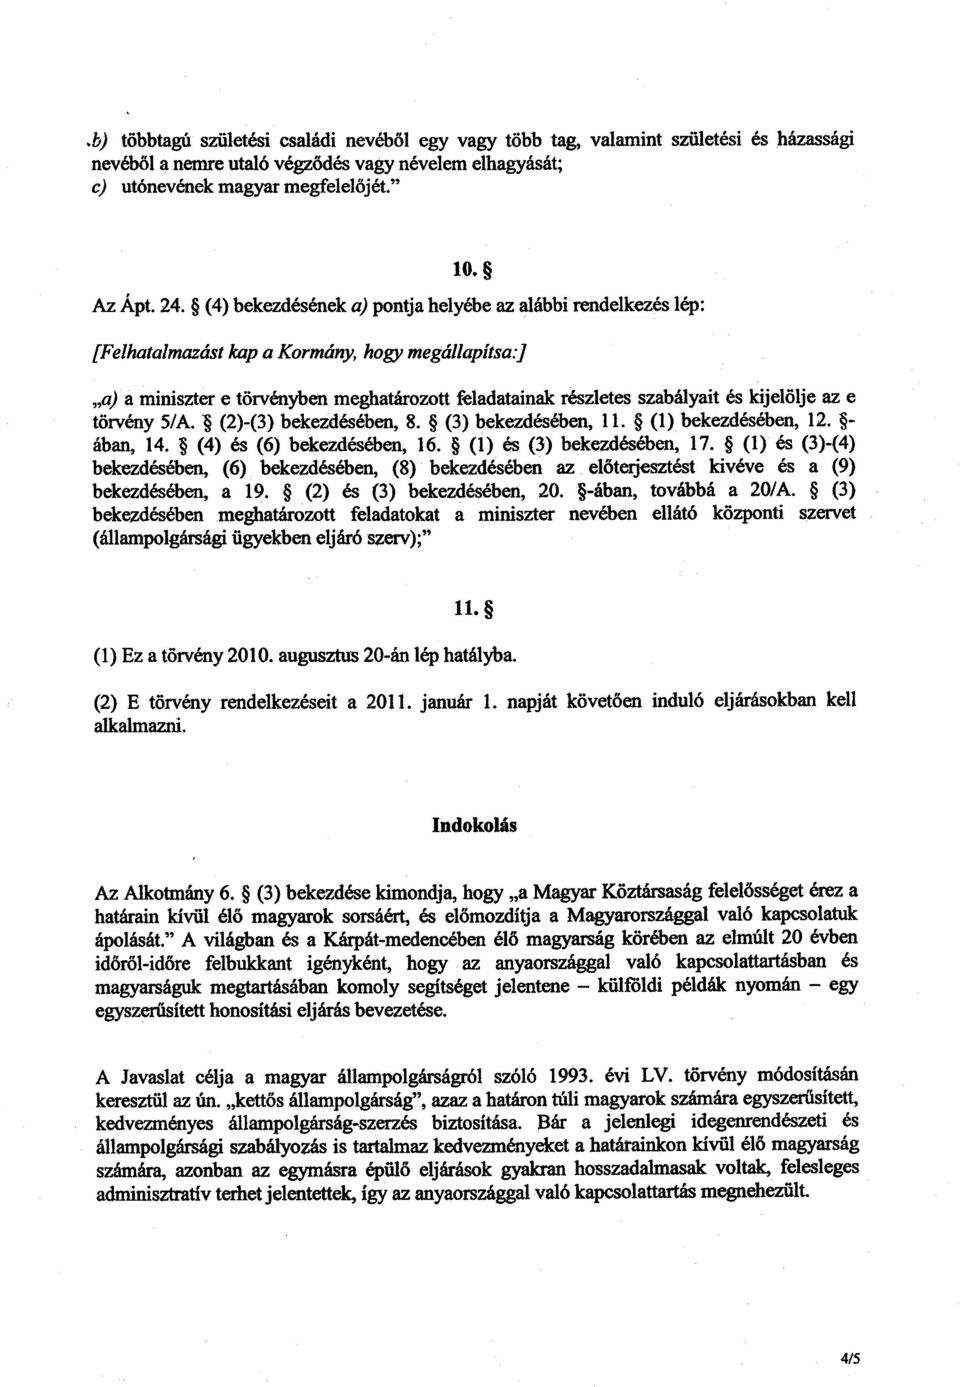 [Felhatalmazást kap a Kormány, hogy megállapítsa;) a) a miniszter e törvényben meghatározott feladatainak részletes szabályait és kijelölje az e törvény 5/A. (2)-(3) bekezdésében, 8.